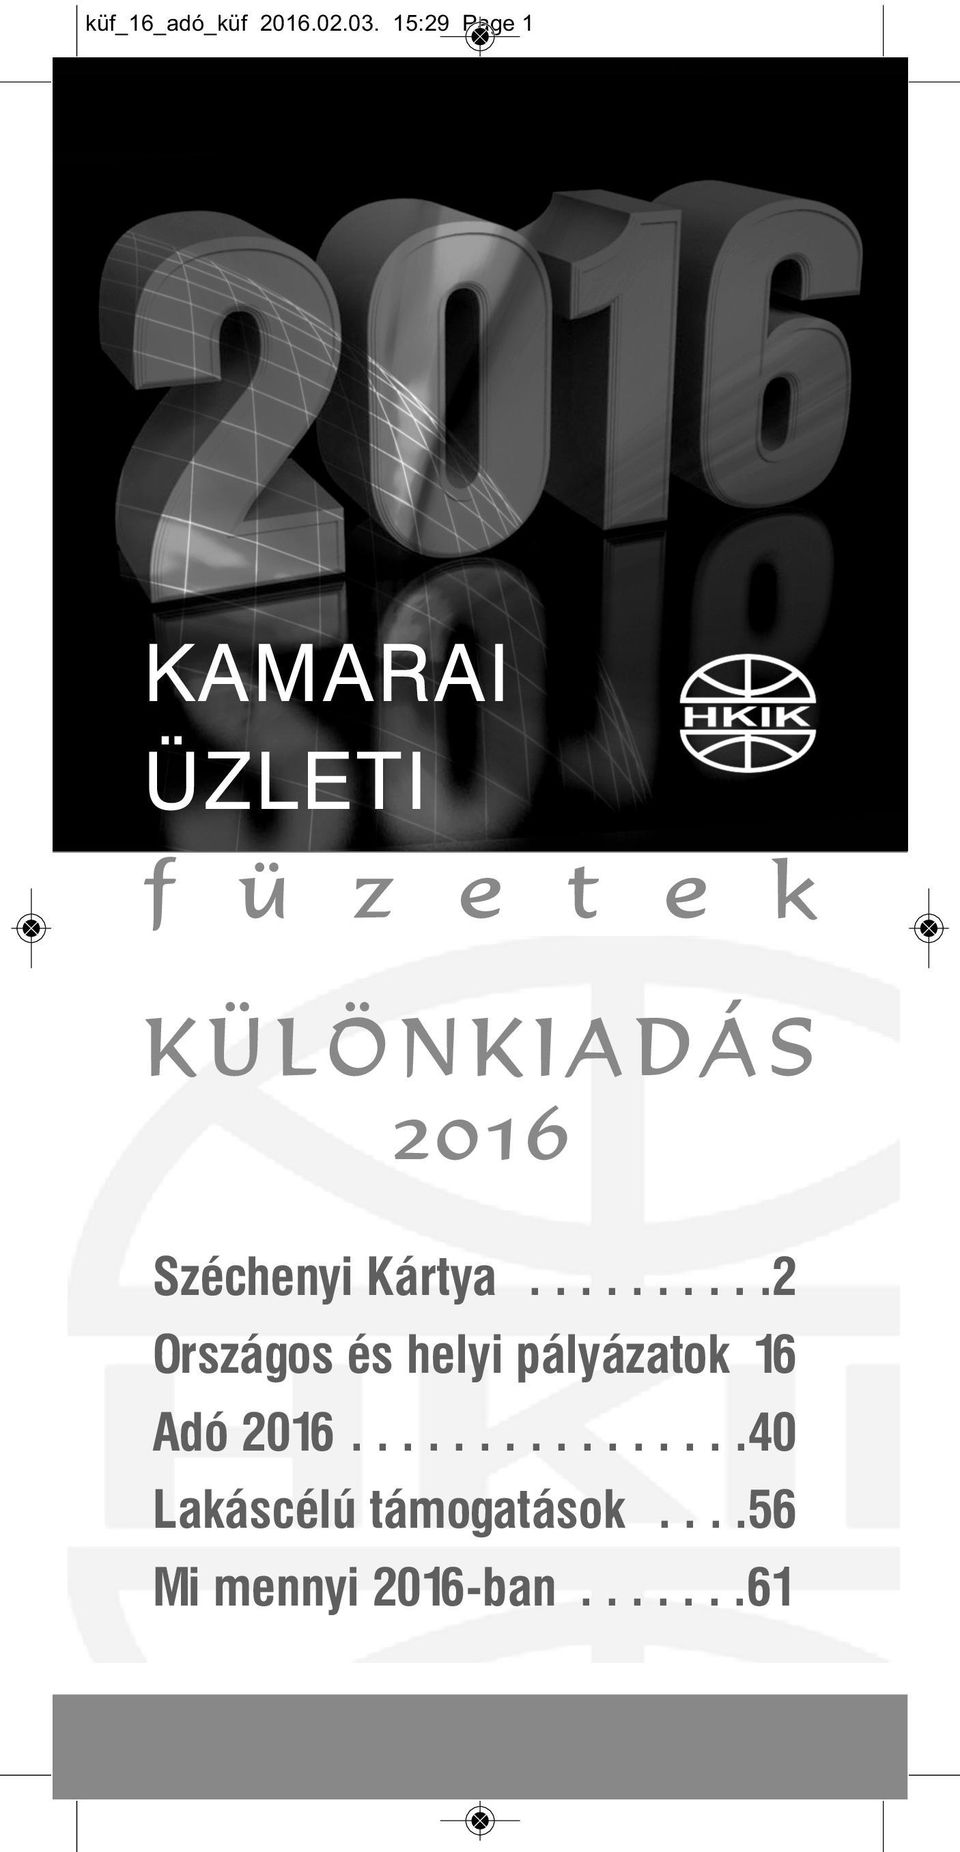 Á S 2016 Széchenyi Kártya.